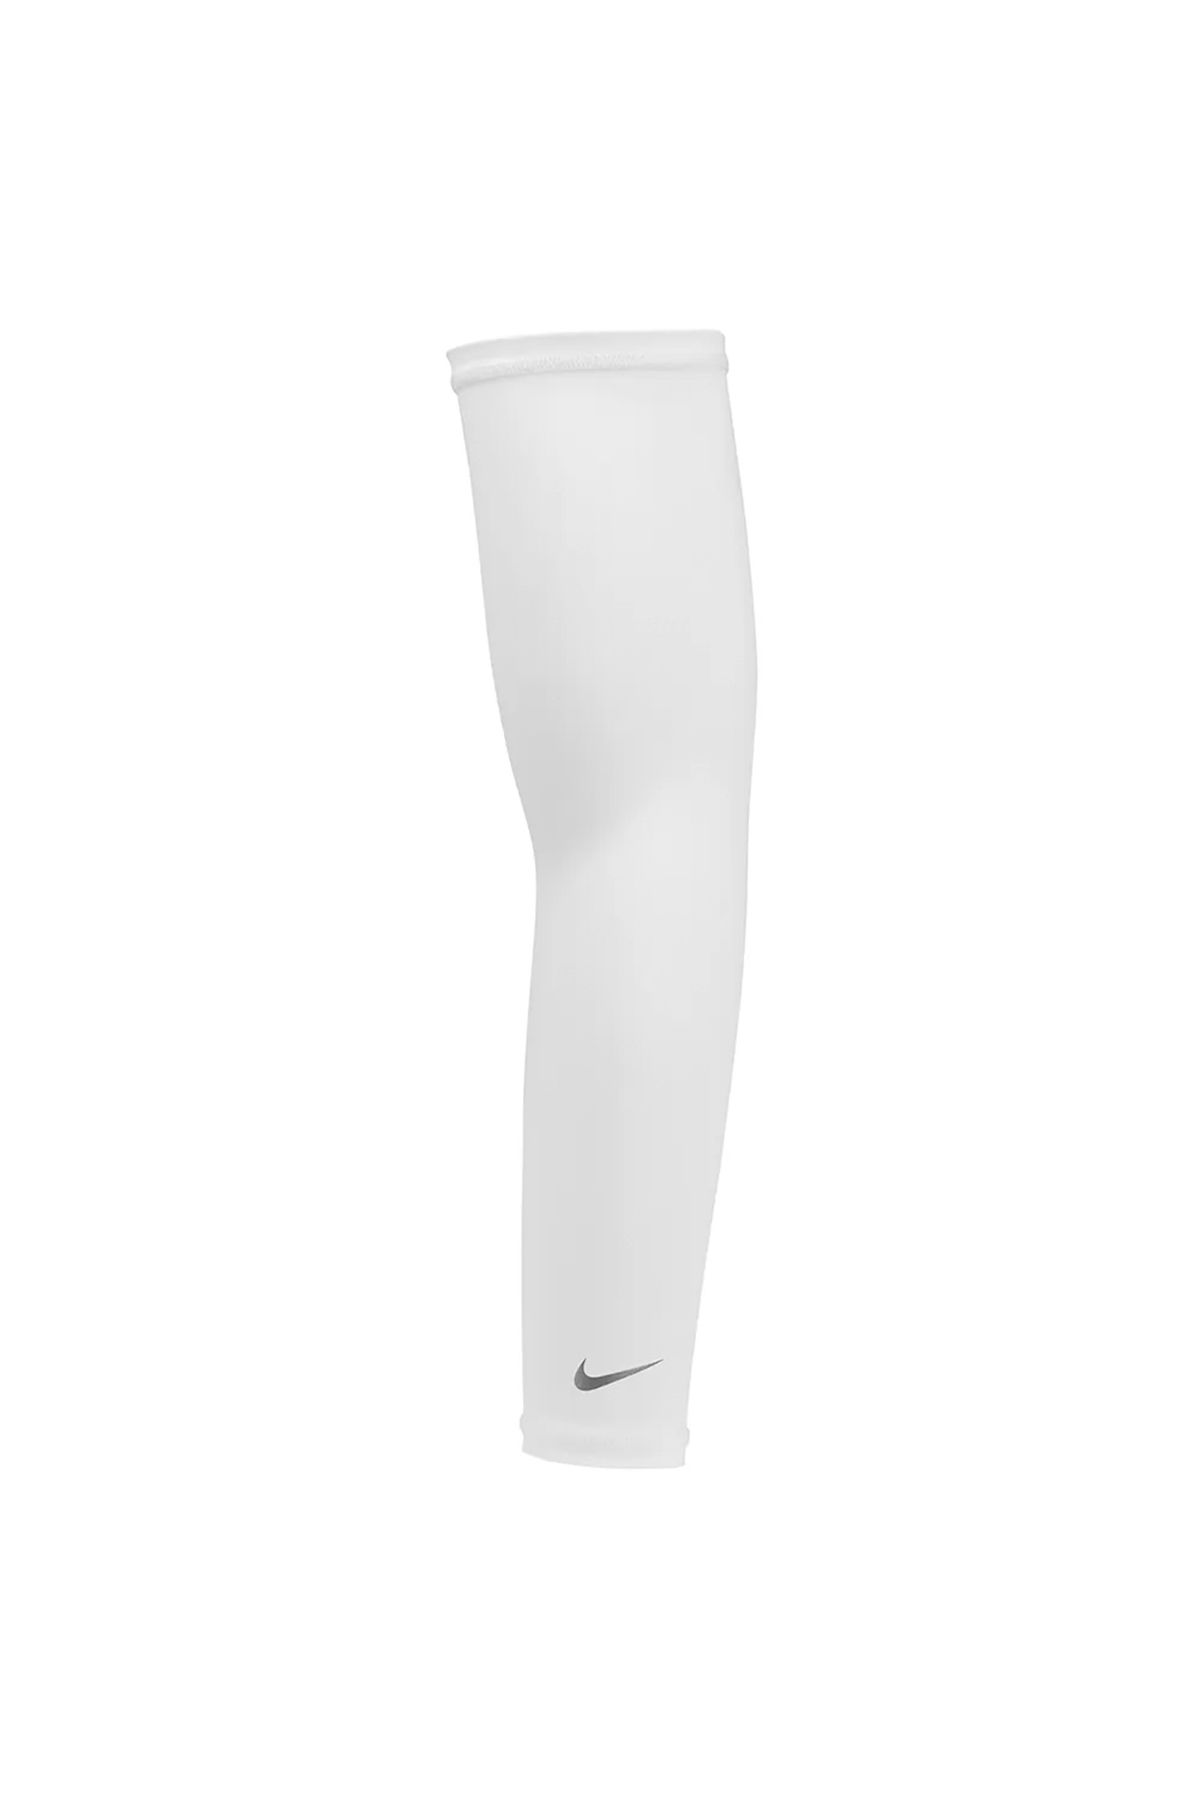 Nike N1004268-109 Lightweight Sleeves Kolluk